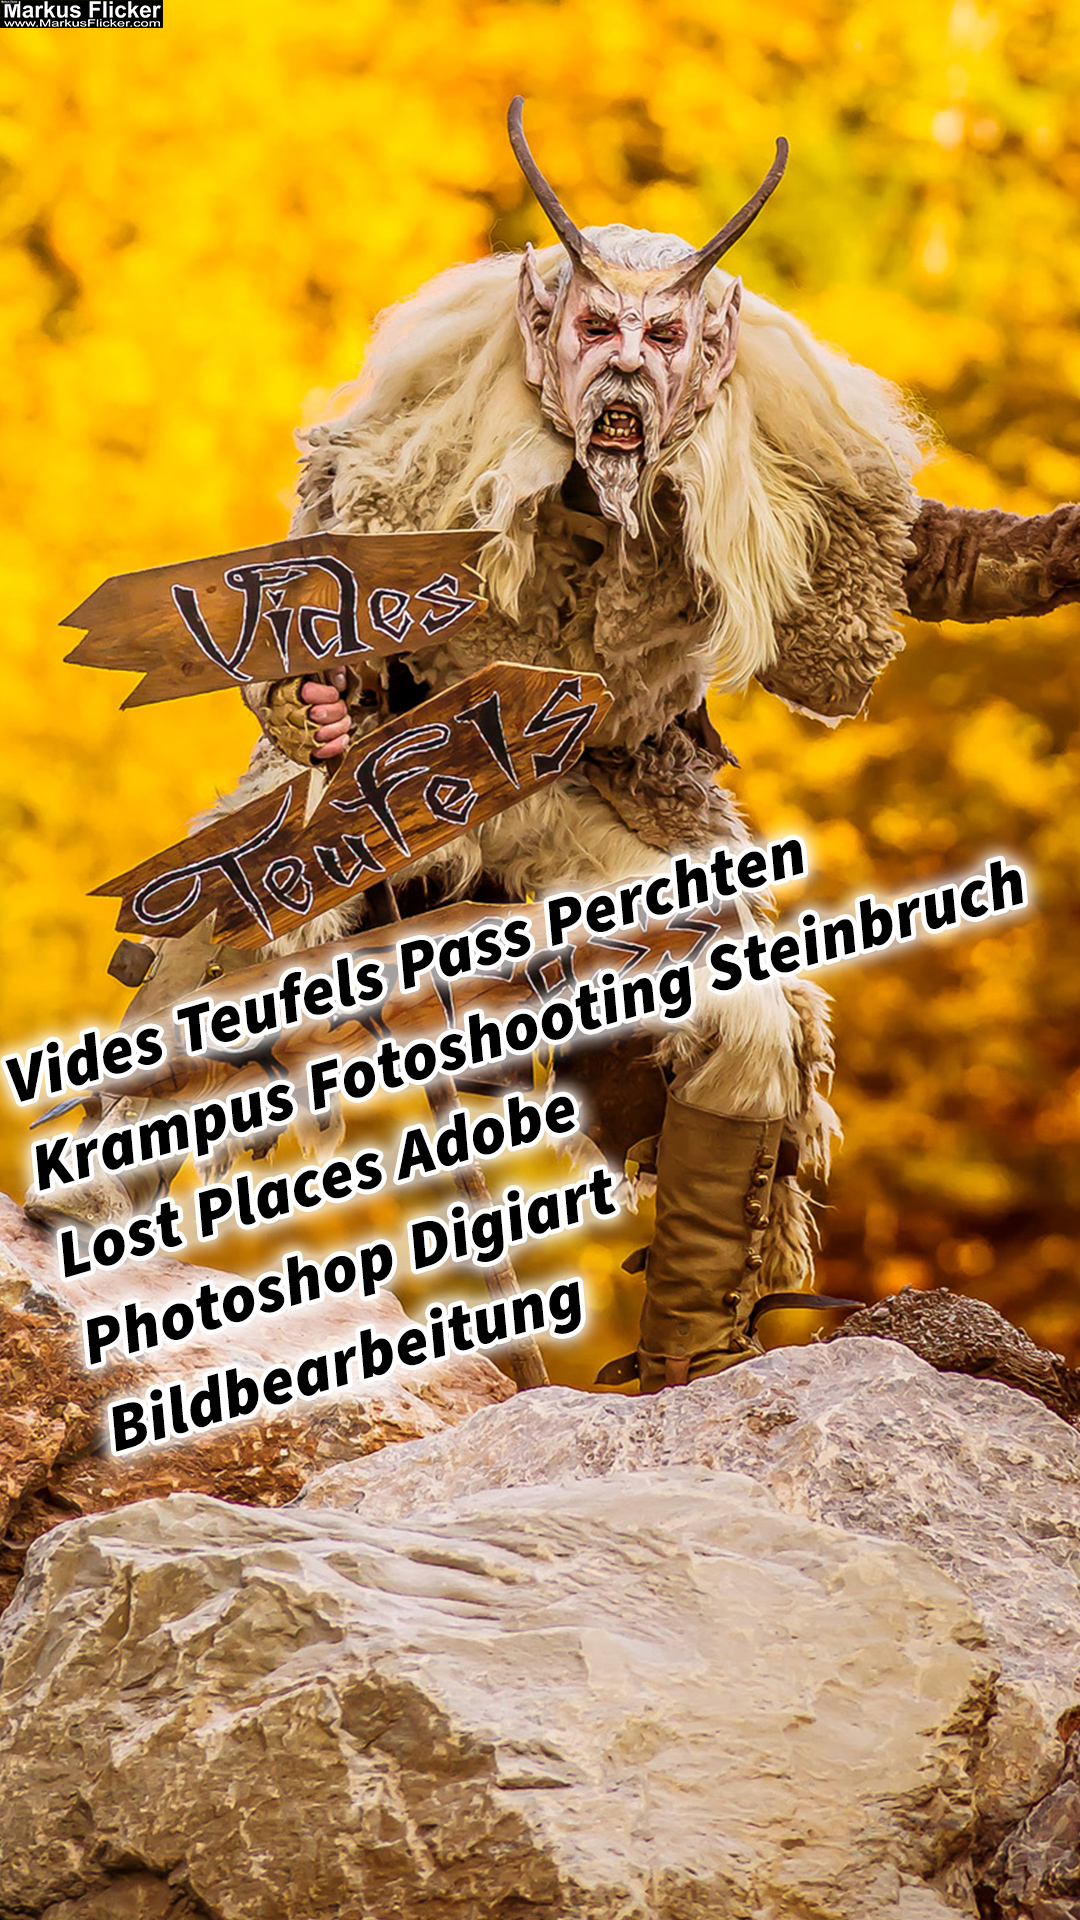 Vides Teufels Pass Perchten Krampus Fotoshooting Steinbruch Lost Places Adobe Photoshop Digiart Bildbearbeitung